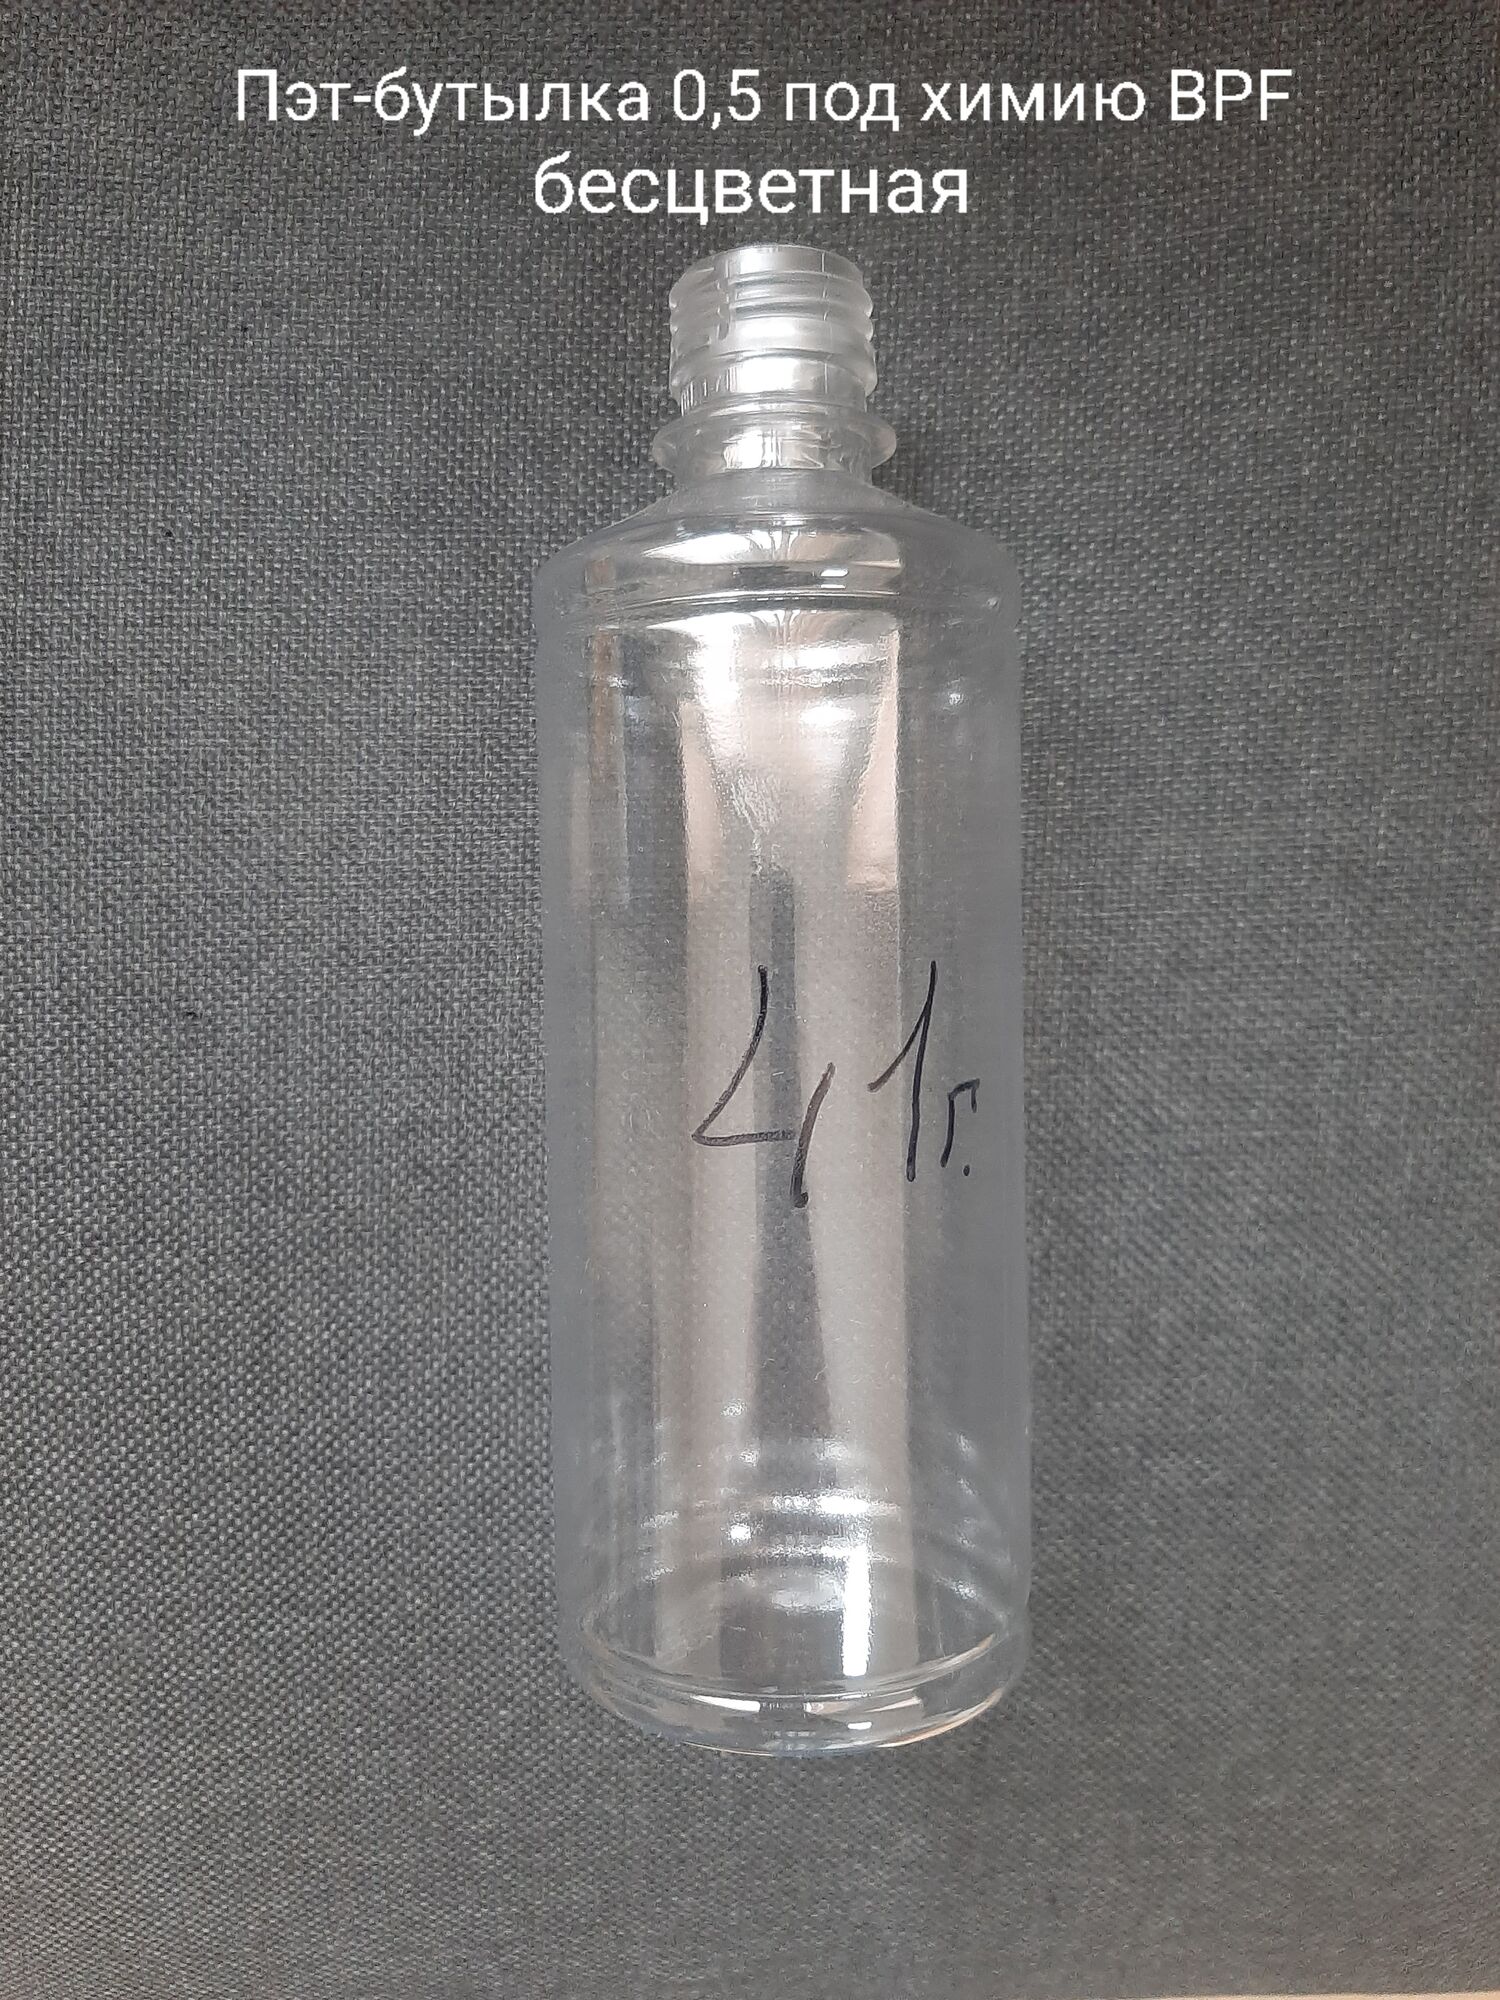 Пэт-бутылка 0,5 под химию BPF, бесцветная (150 шт в упаковке) вес 41 гр.